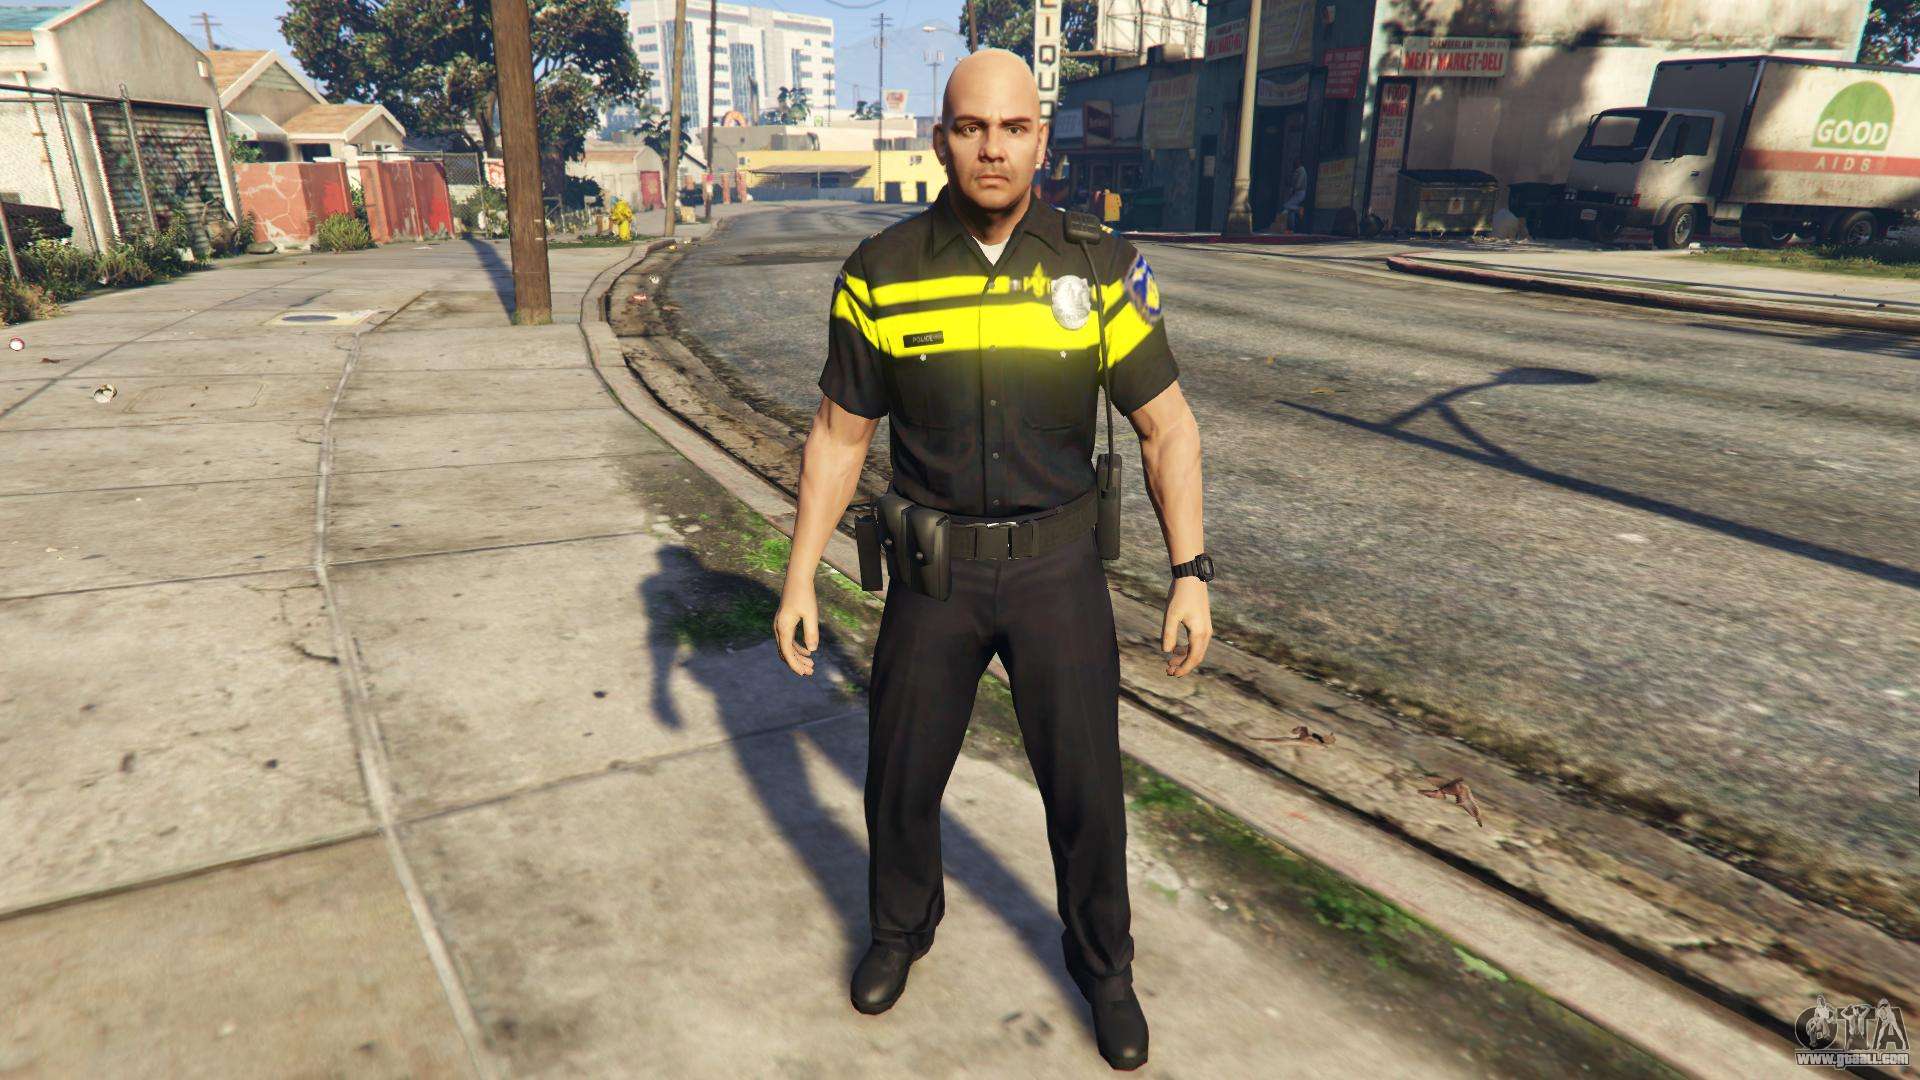 Politie PED  Skin for GTA  5 